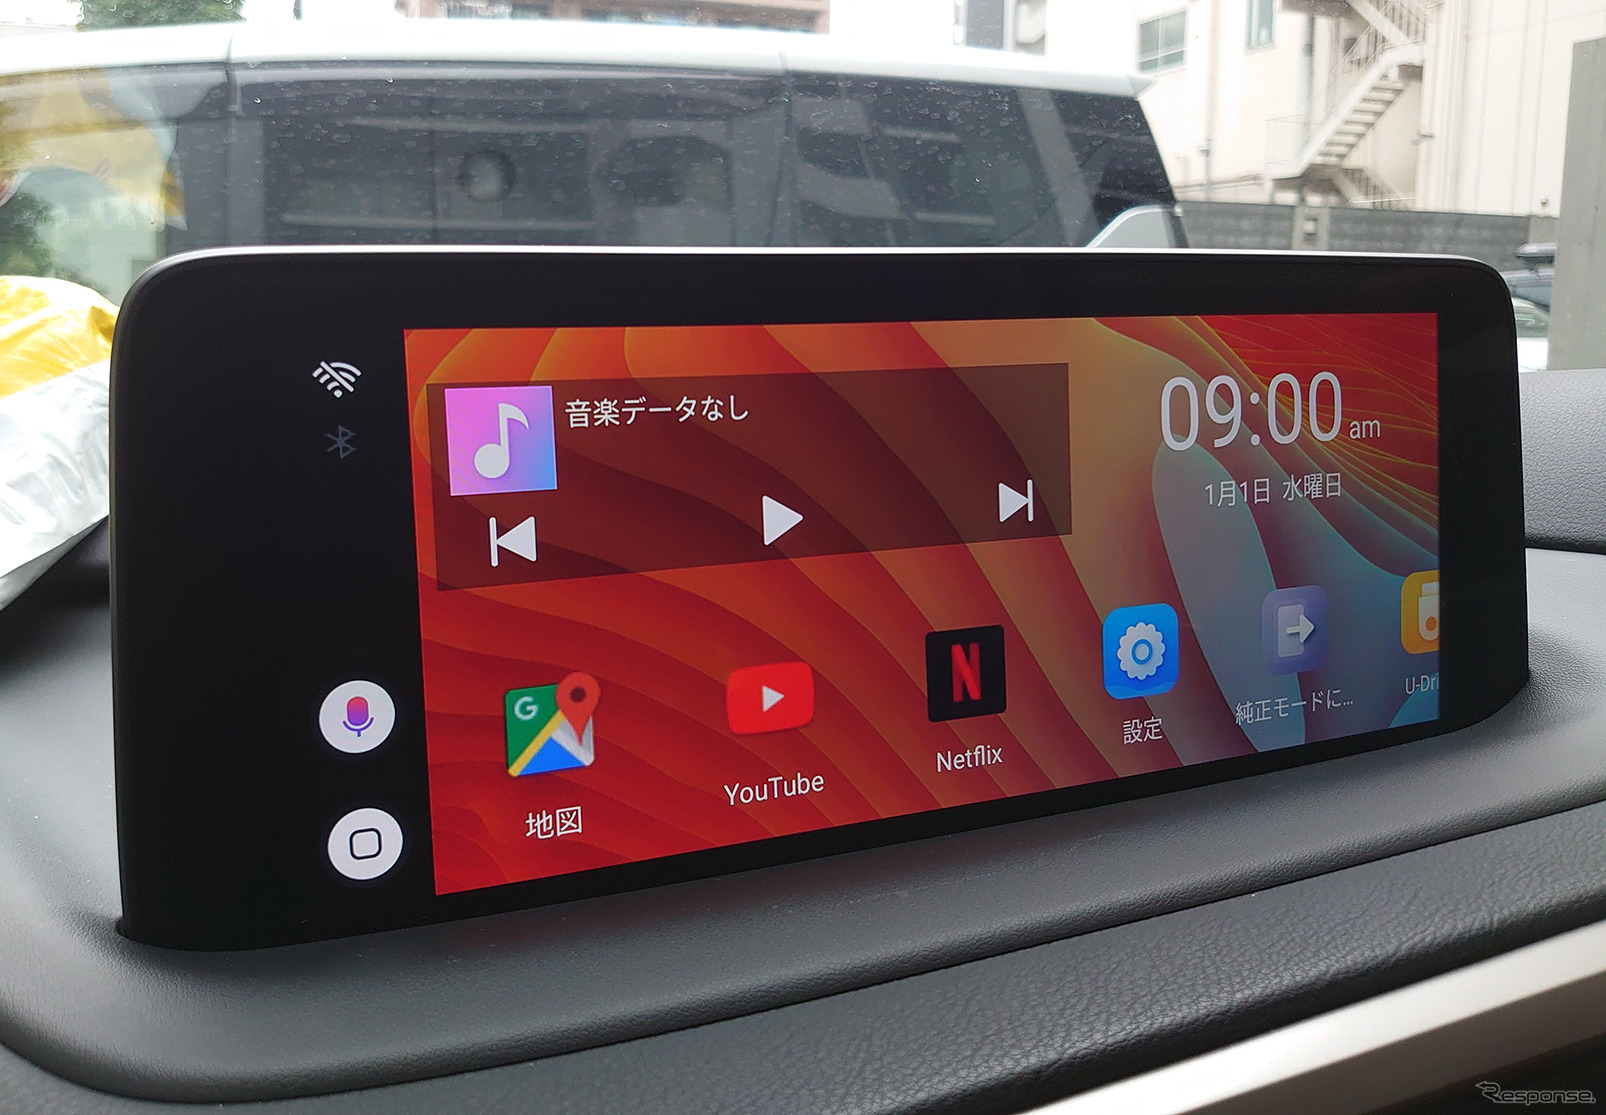 「Apple CarPlay」に対応した車載機器にて、映像系アプリも楽しめるようになる「車載用Android端末」の一例（VISIT）。